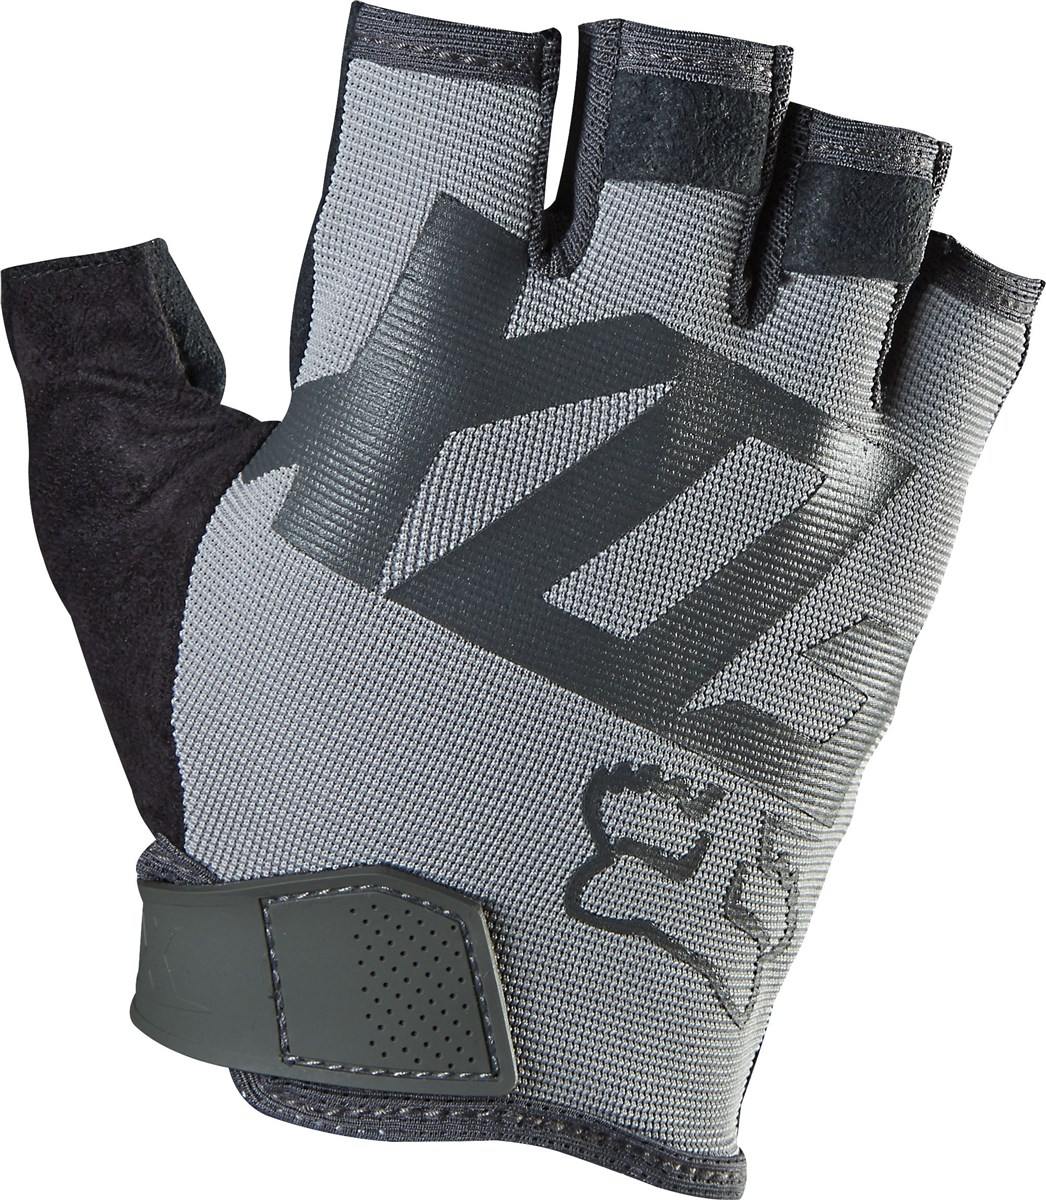 Fox Clothing Ranger Short Finger Gloves SS16